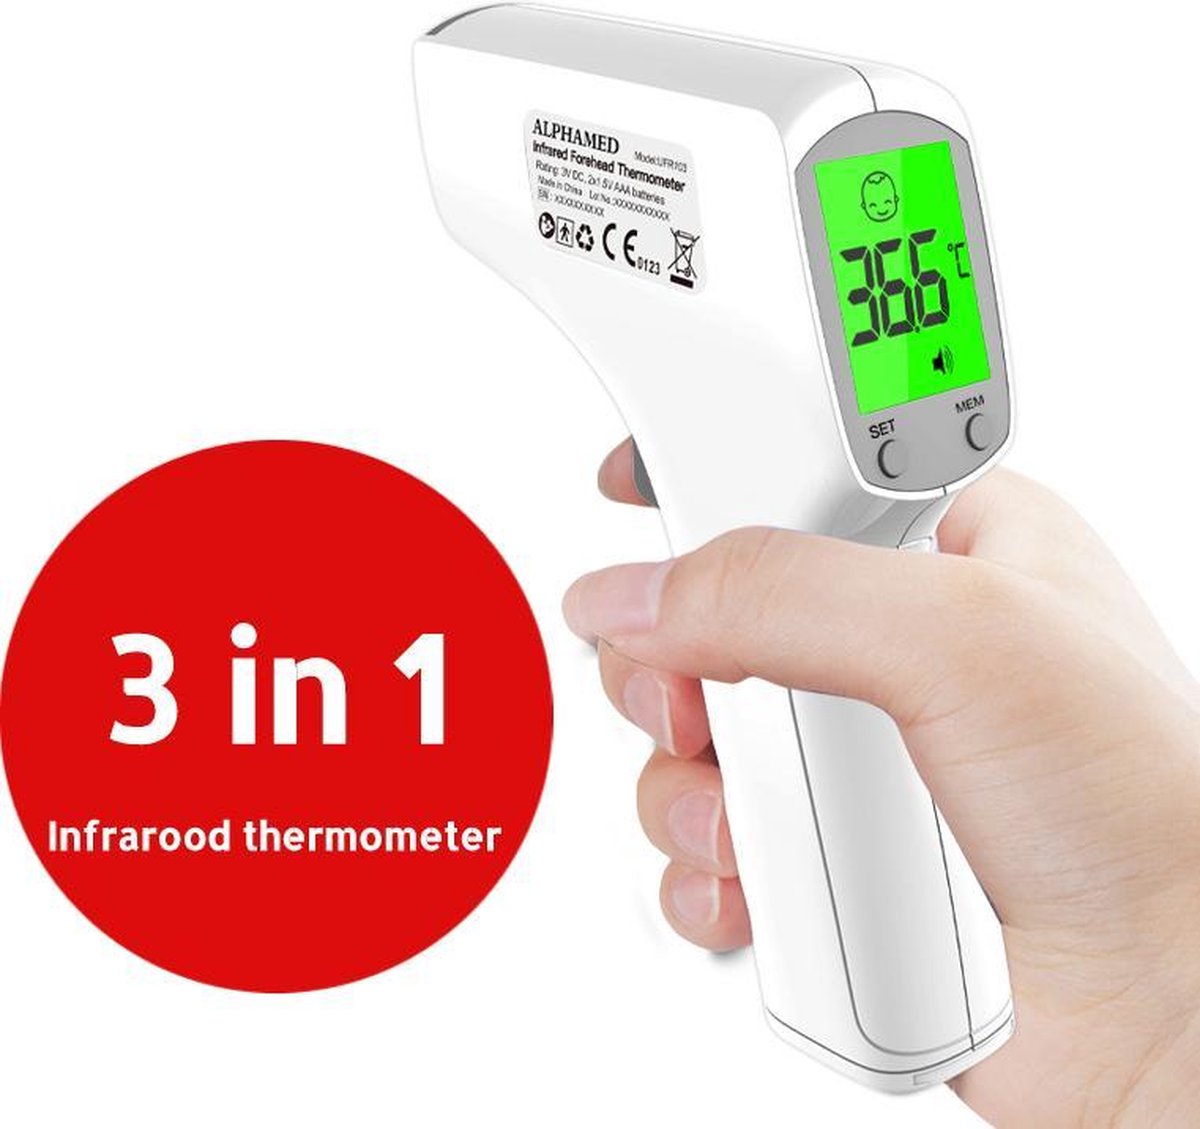 Alphamed - Professionele Infrarood thermometer - Koortsthermometer - Thermometer voorhoofd - Alarm bij koorts - Incl. batterijen - Alphamed